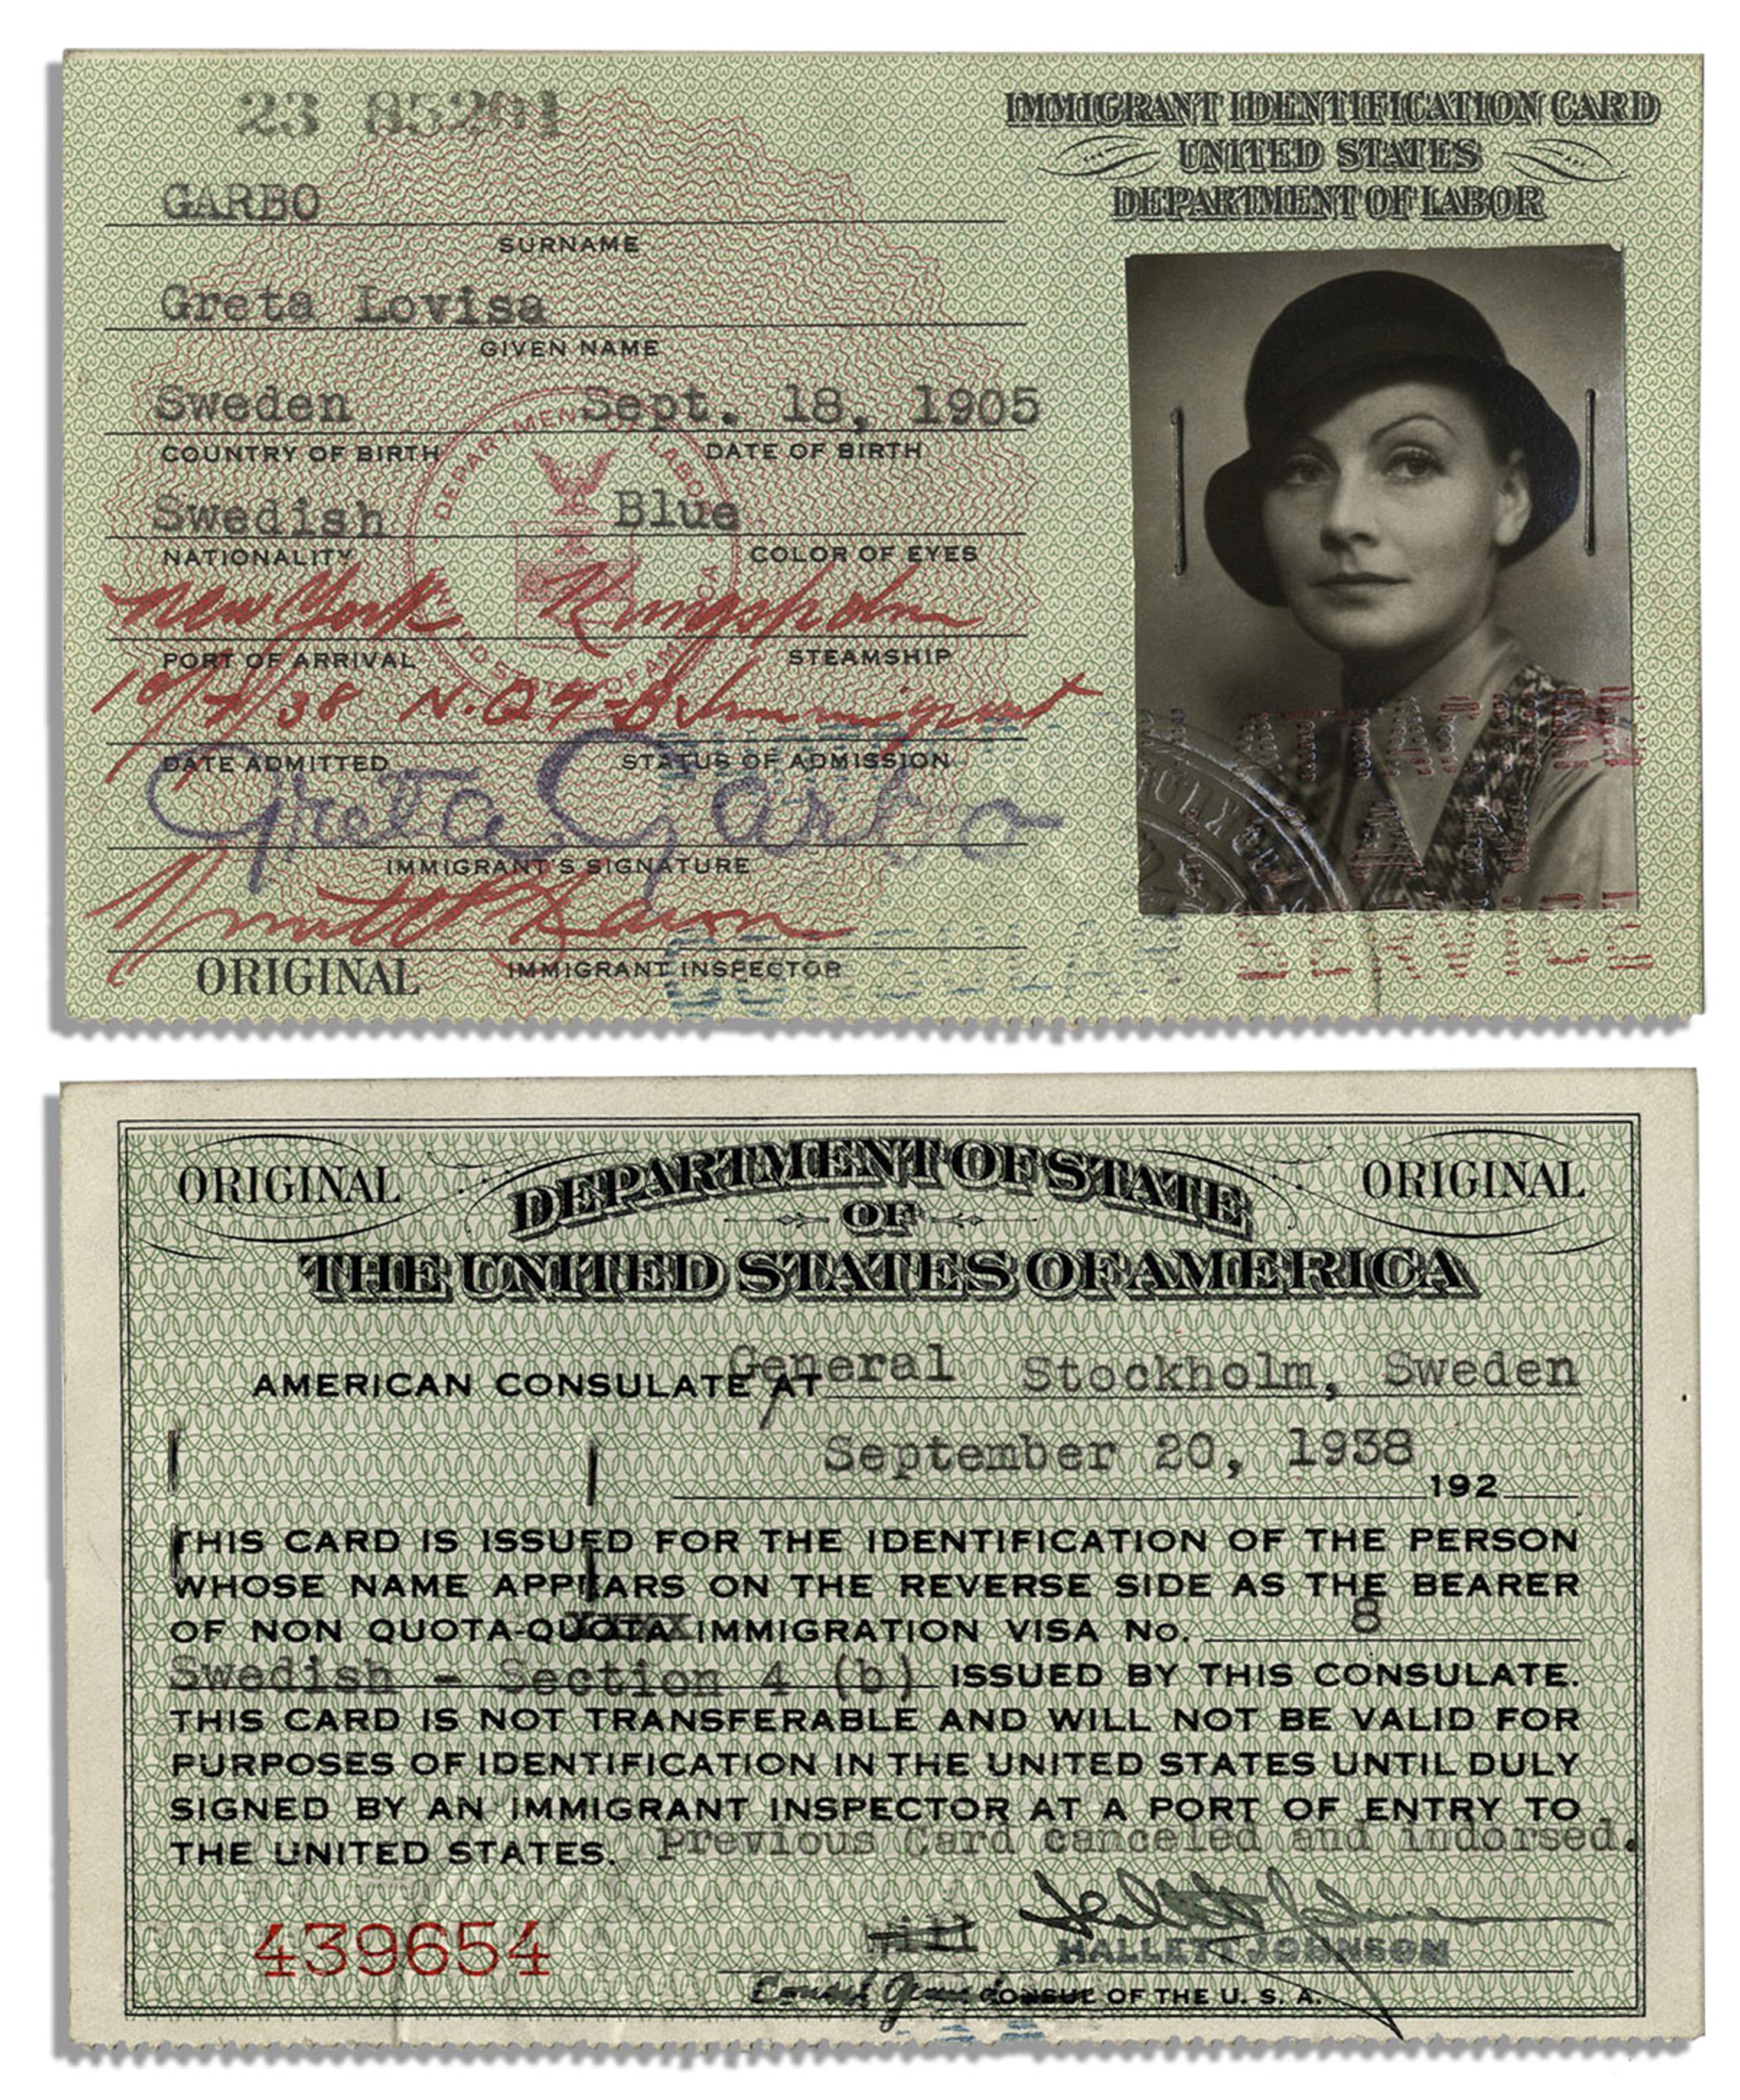 La Carta d'immigrazione con cui Greta Garbo entrò negli Stati Uniti